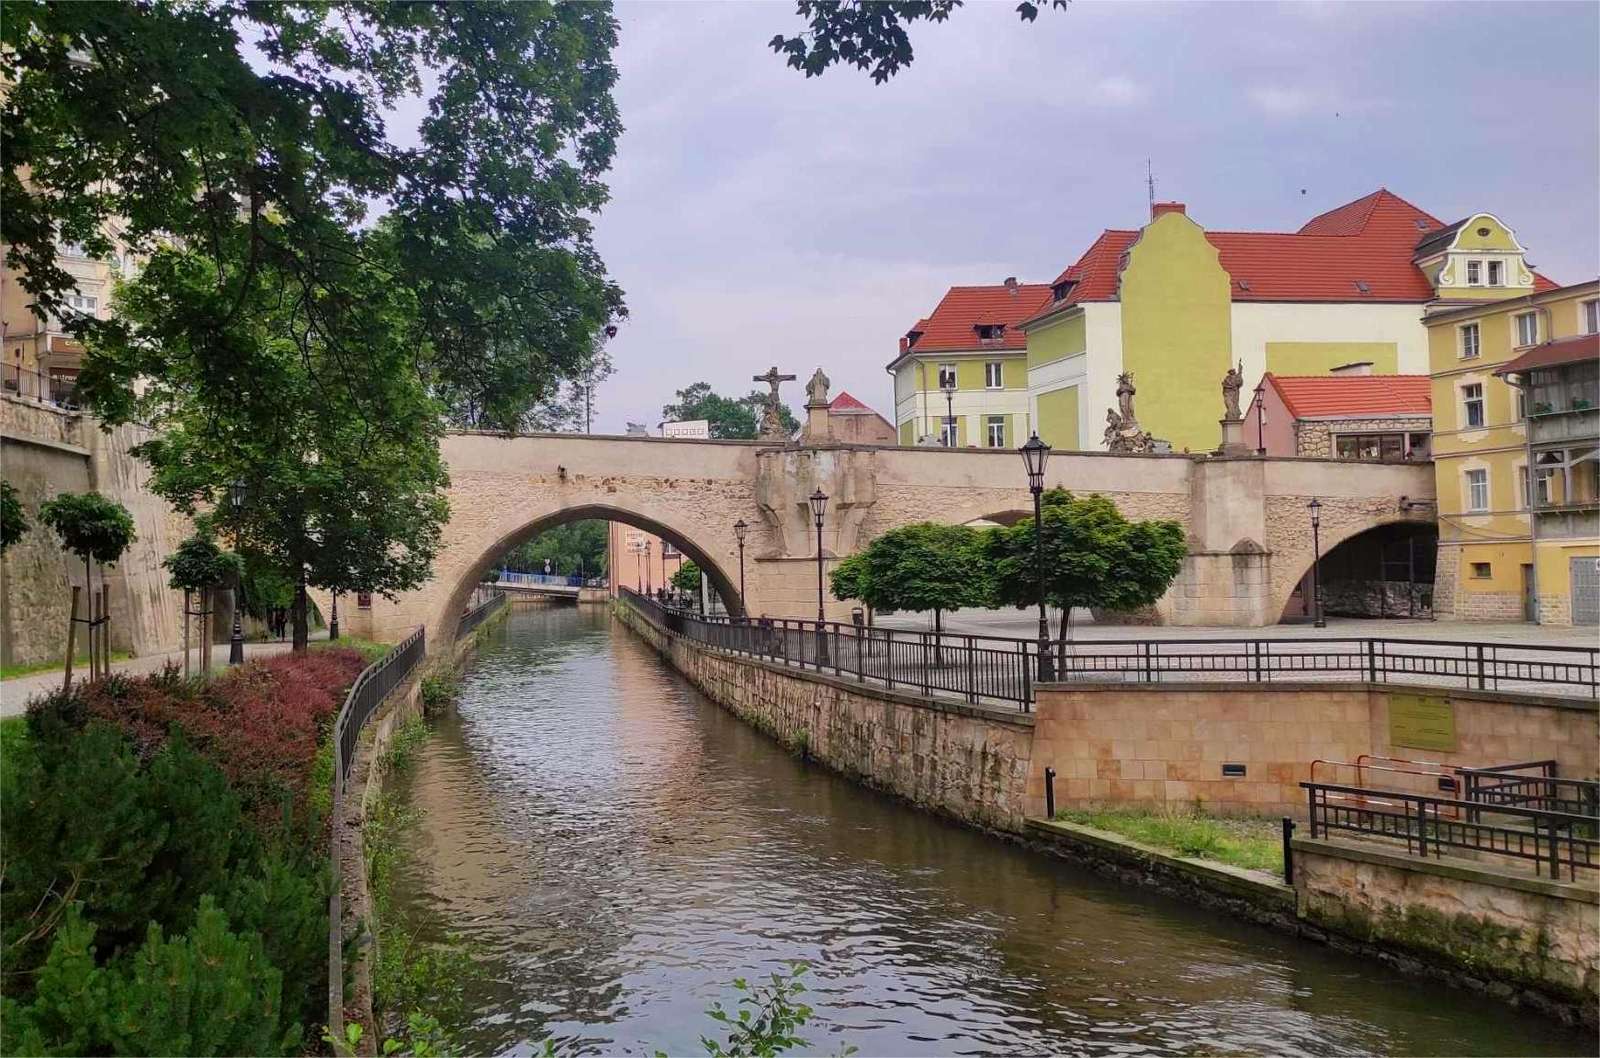 Neder-Silezische stad 2 legpuzzel online